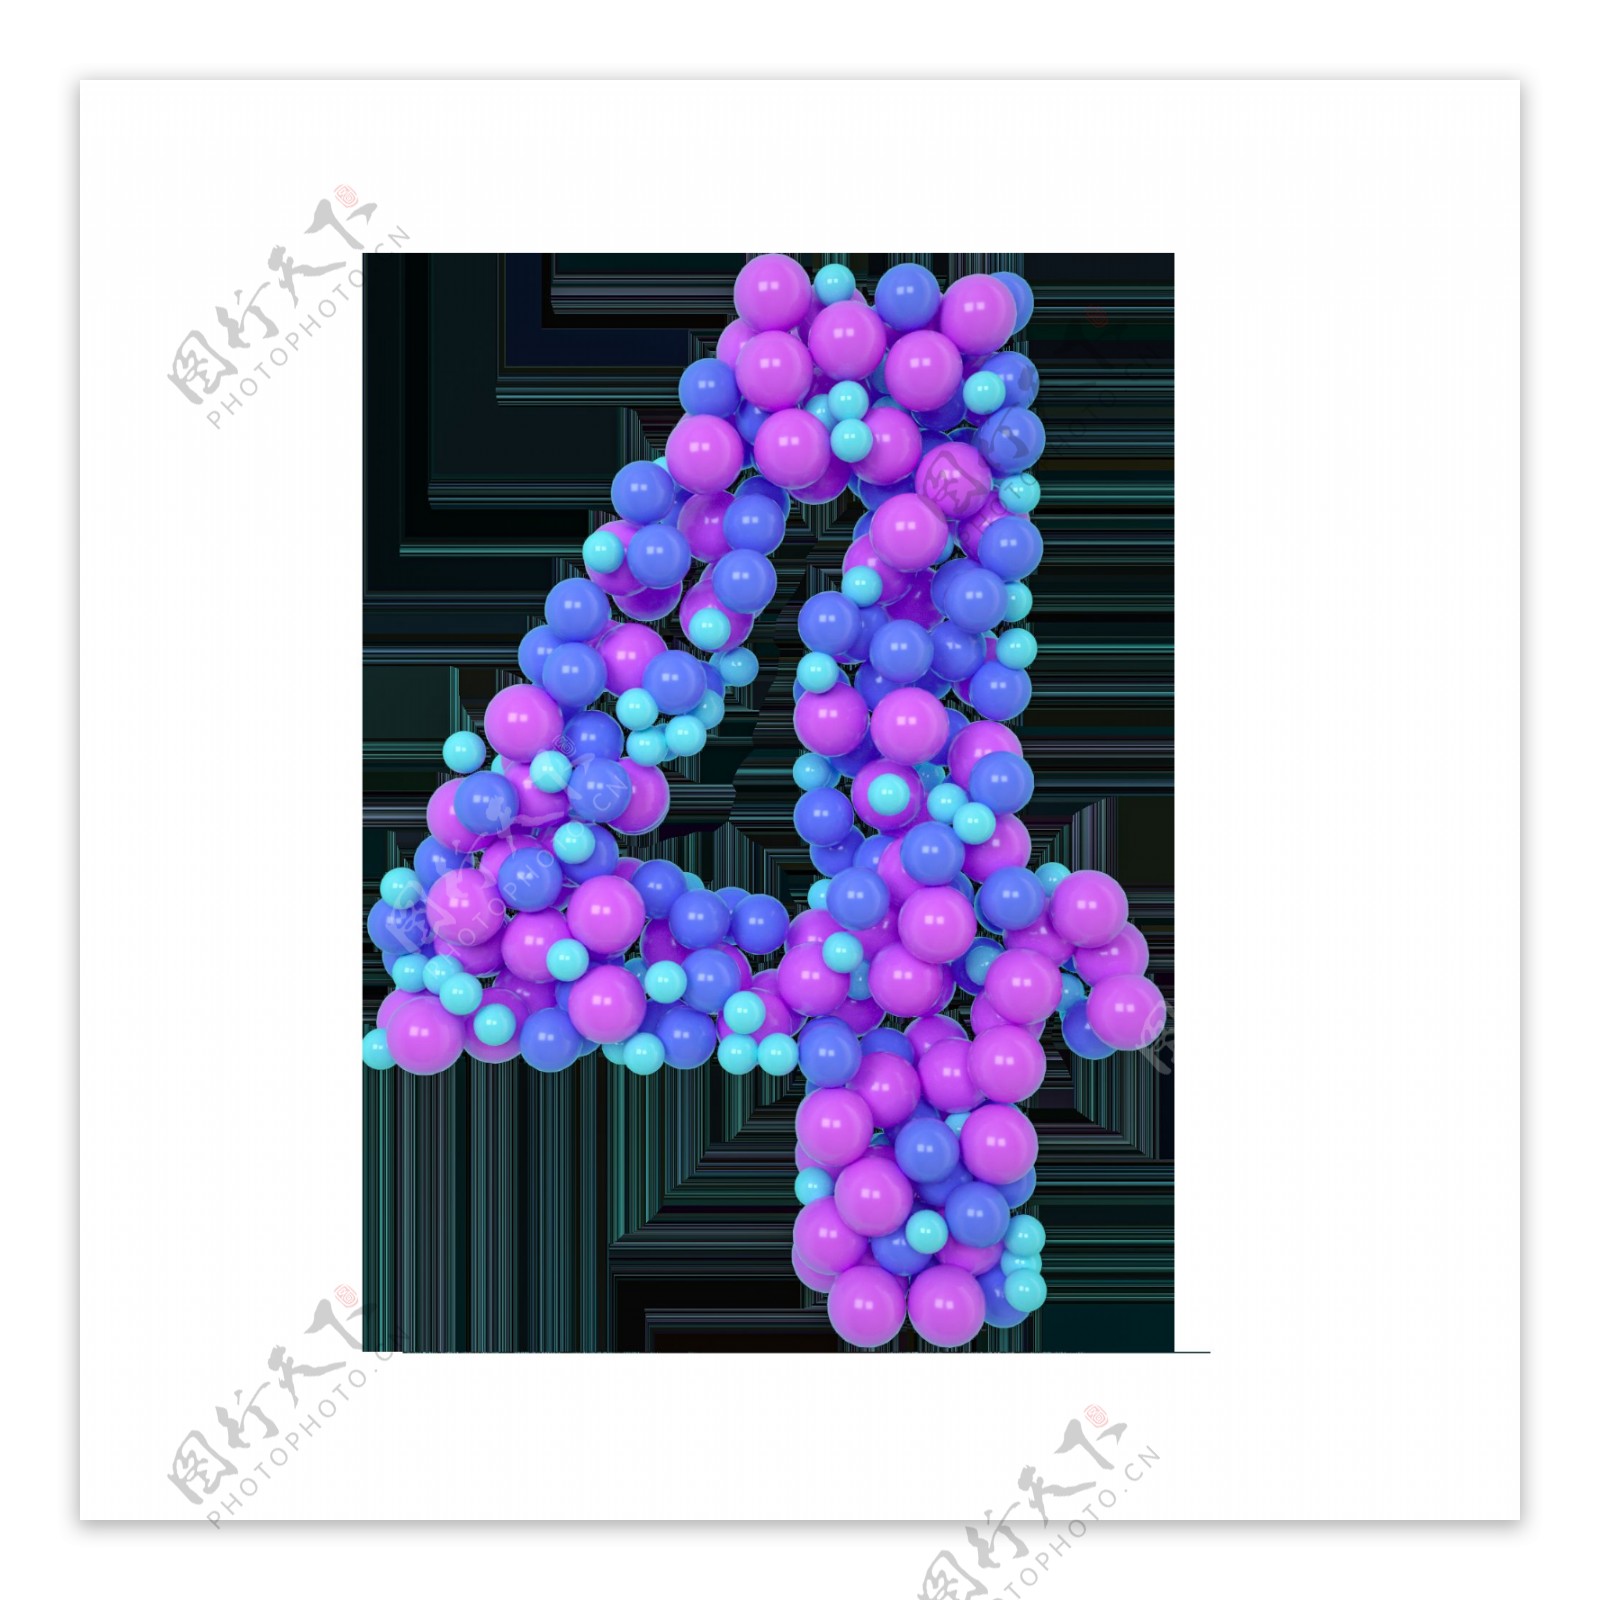 紫色气球阿拉伯数字4